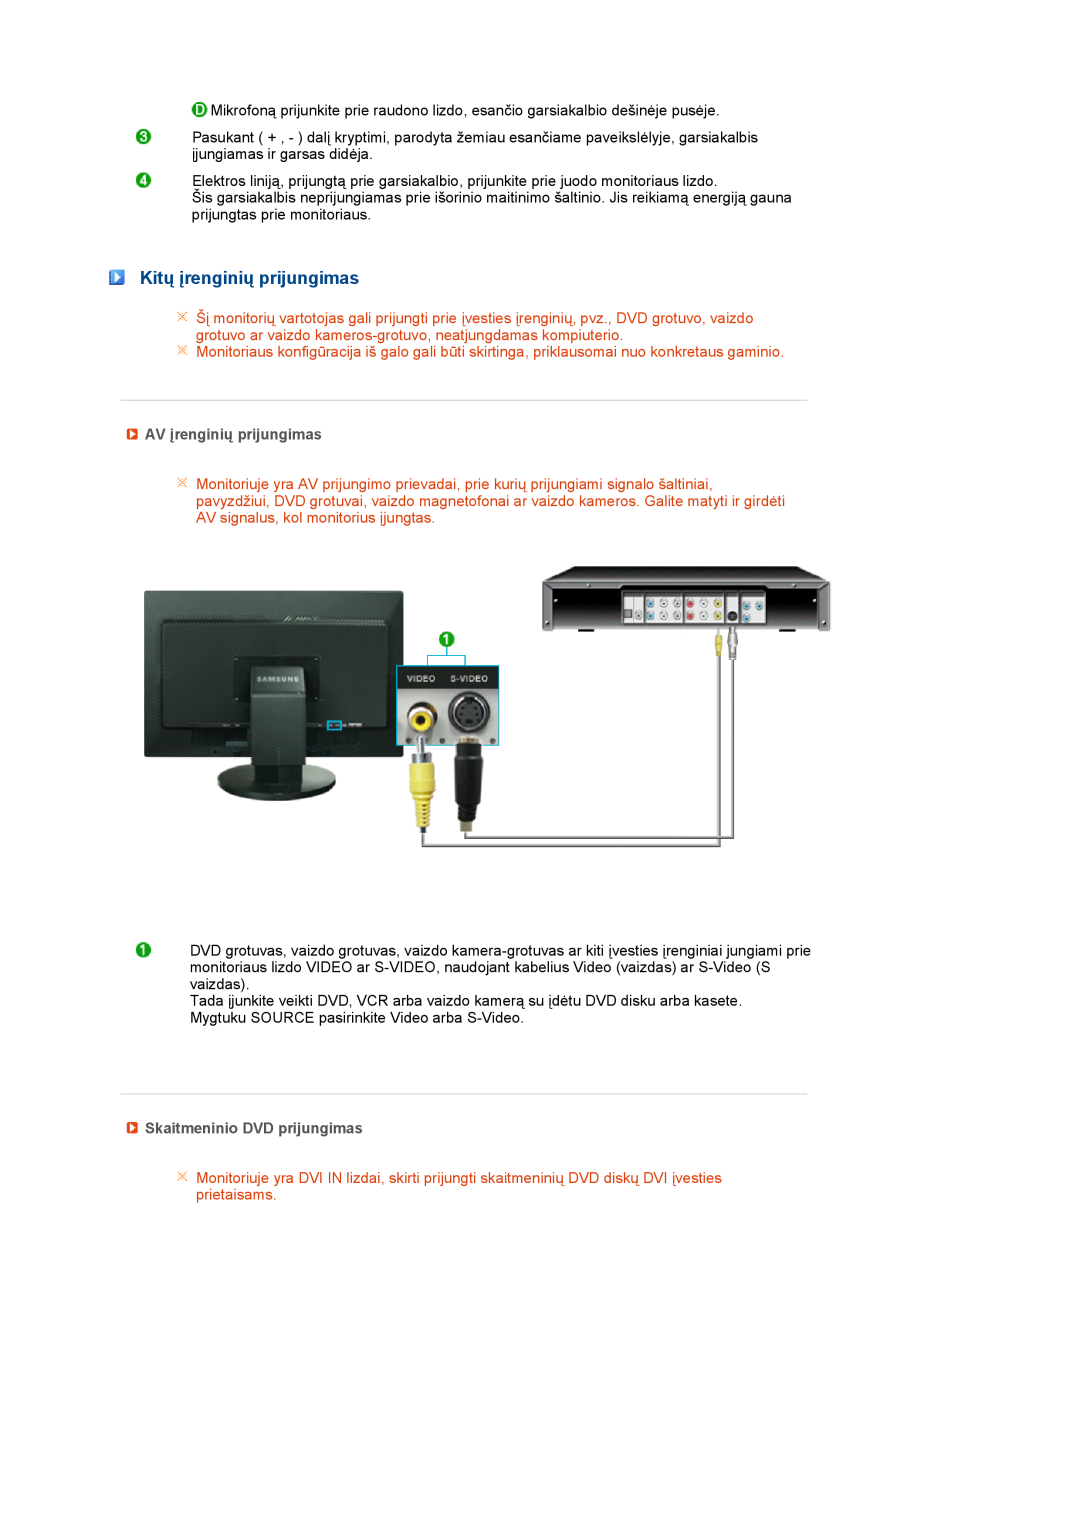 Samsung LS27HUBCB/EDC manual Kitų įrenginių prijungimas, AV įrenginių prijungimas, Skaitmeninio DVD prijungimas 